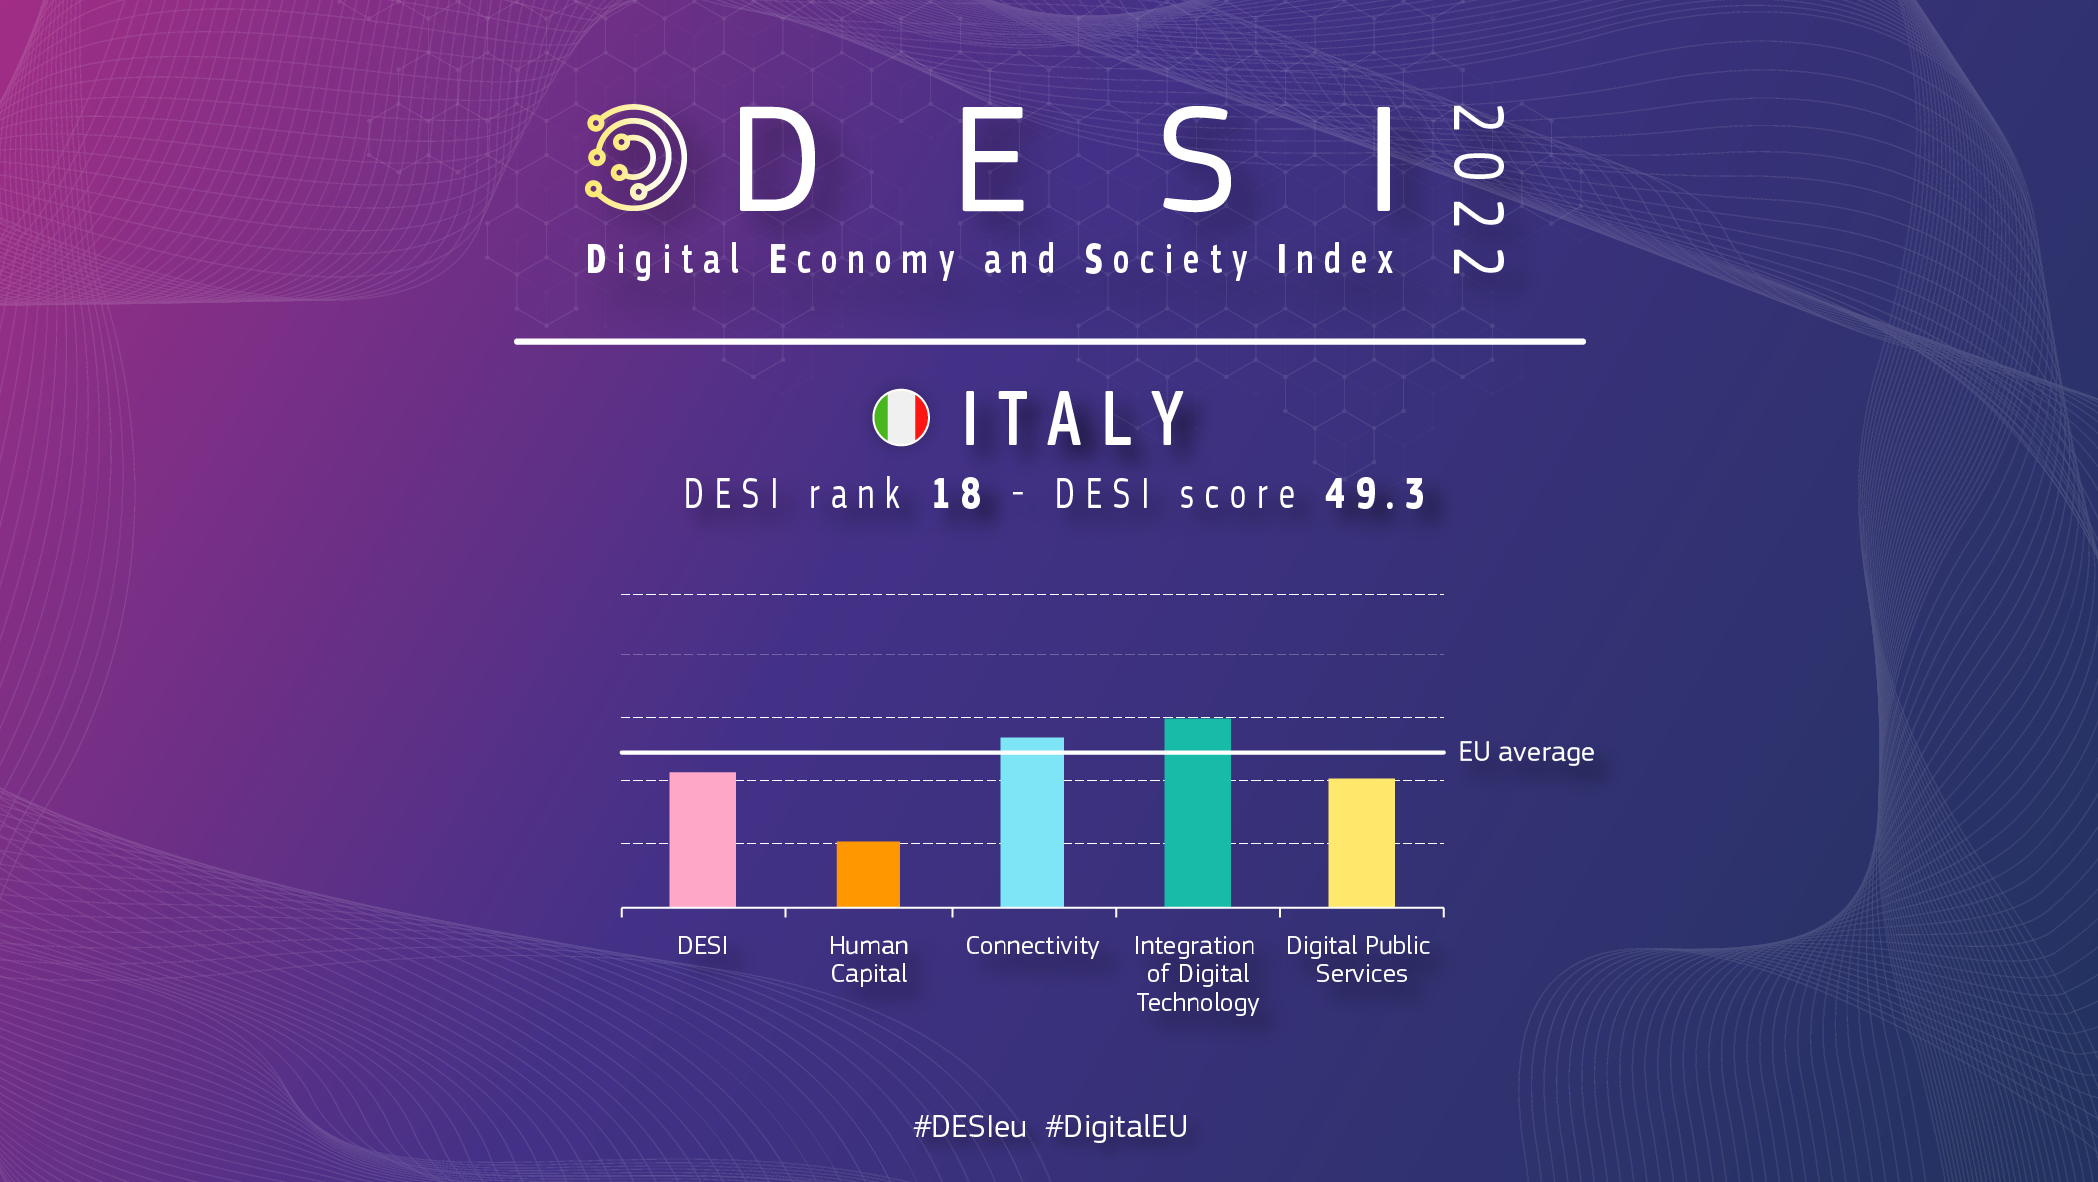 Grafisks pārskats par Itāliju DESI, kurā parādīts 18 reitings ar vērtējumu 49,3